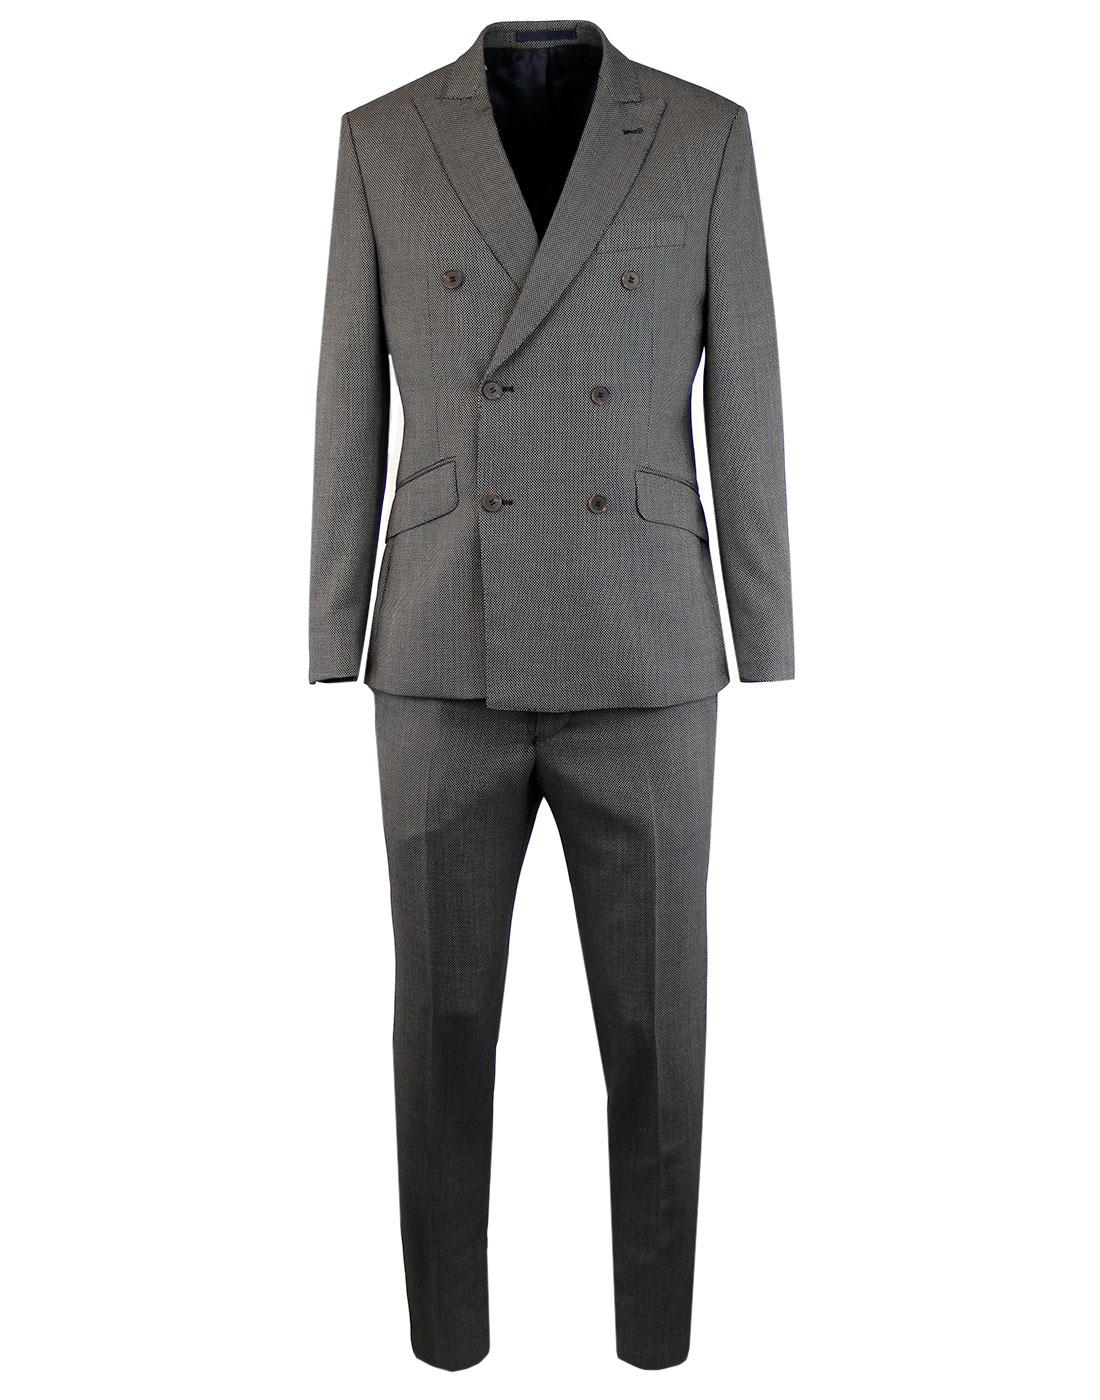 Men's Retro 1960s Mod Birdseye Check Suit in Black